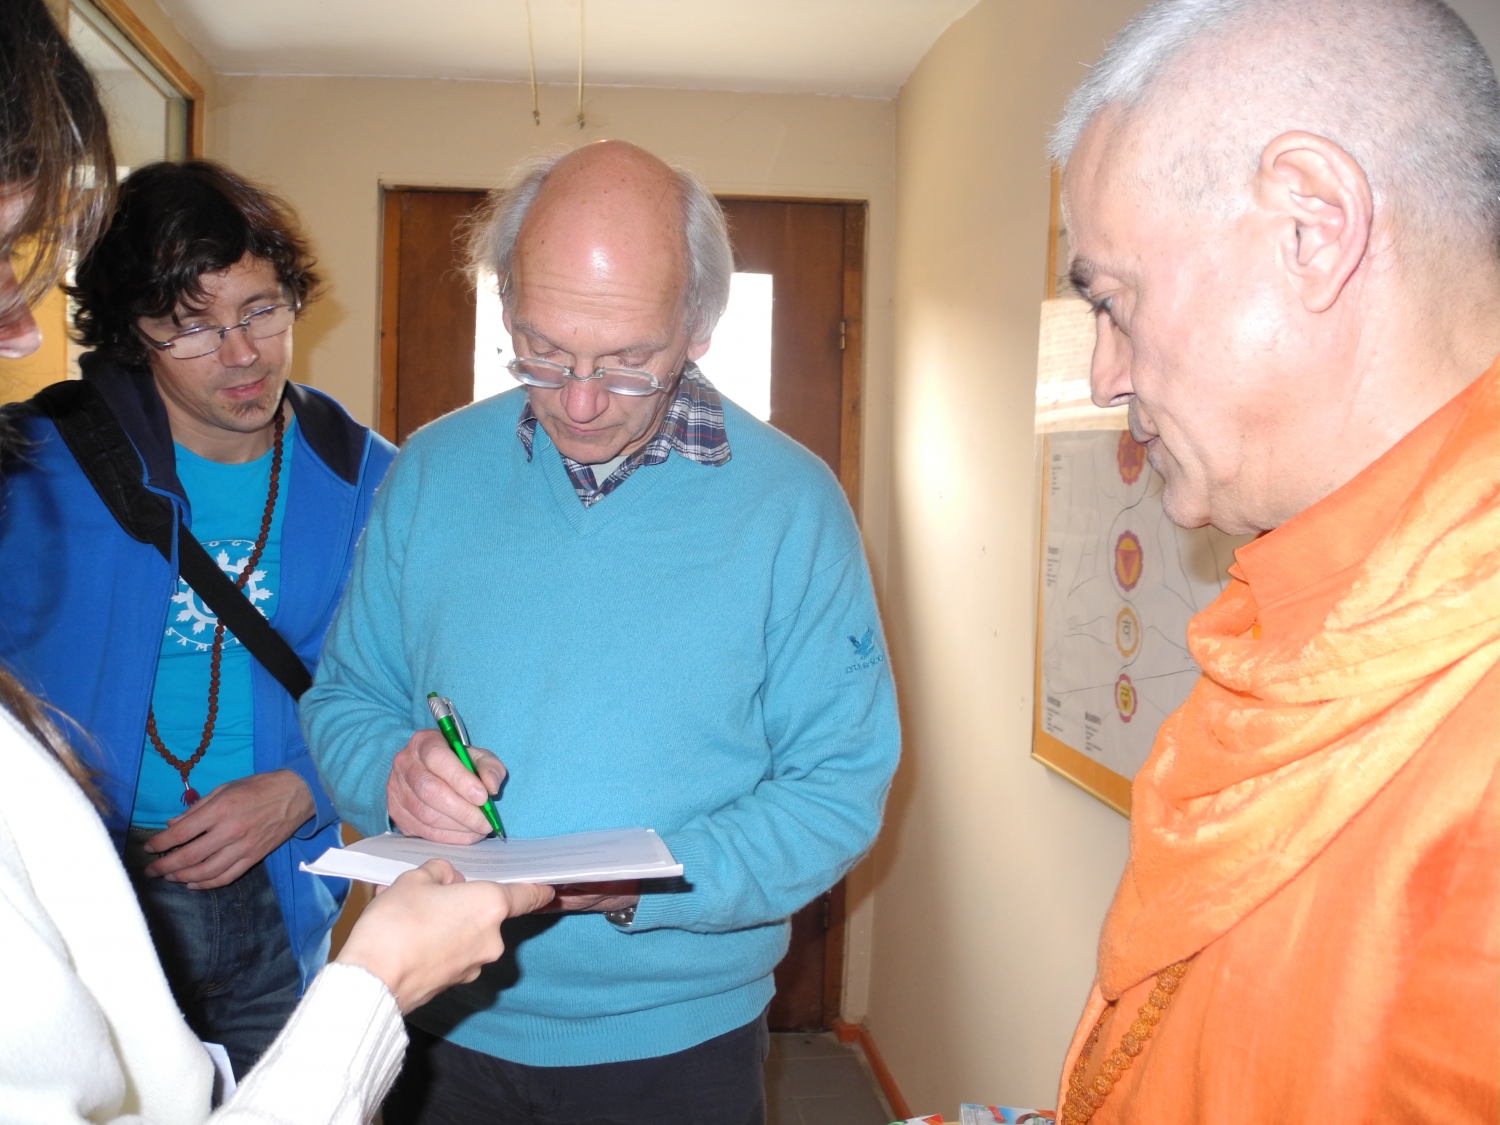 Encontro de H.H. Jagat Guru Amrta Sūryānanda Mahā Rāja com o Mestre Thierry Van Brabant - Centre Samtosha, Jodoigne, Bélgica - 2012, Março